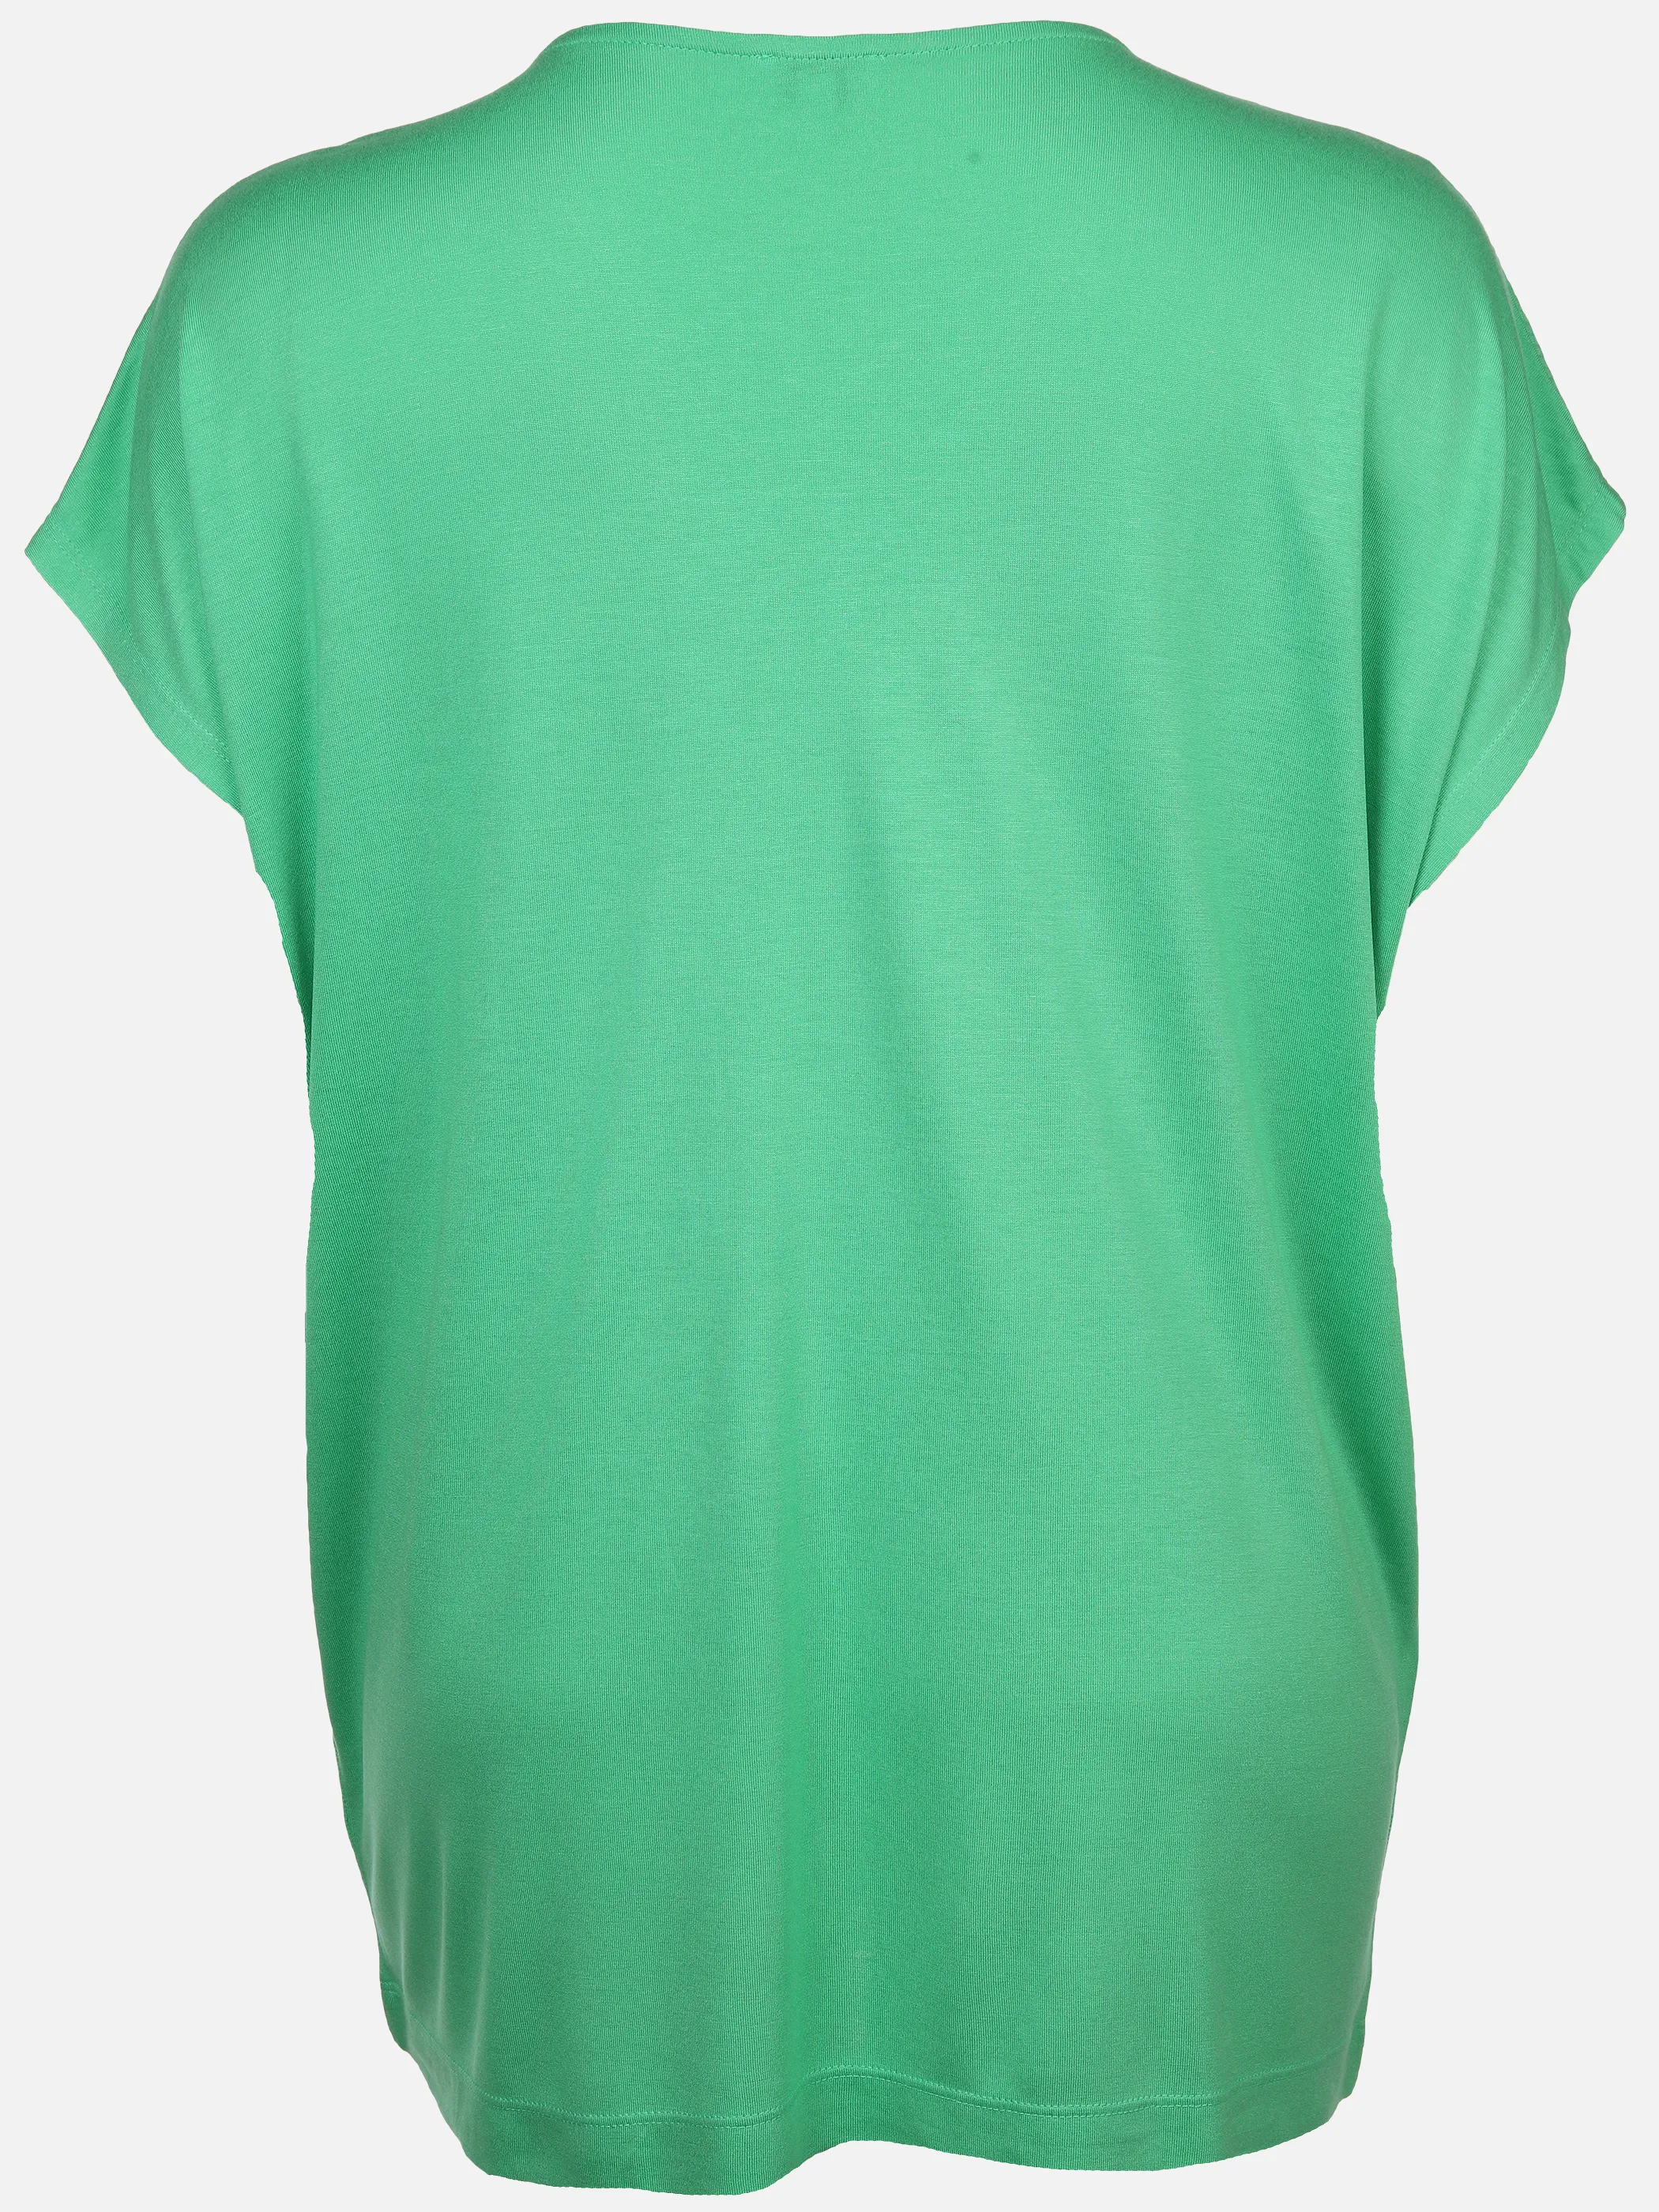 Sonja Blank Da-gr.Gr. T-Shirt V-Ausschnitt Grün 890335 IRISHGREEN 2